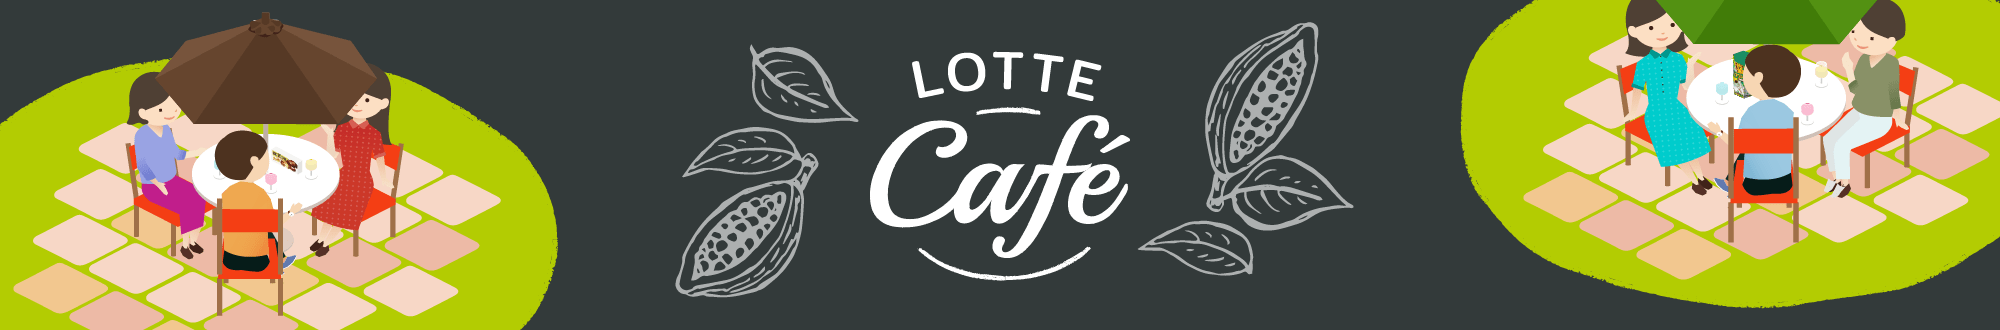 LOTTE Café